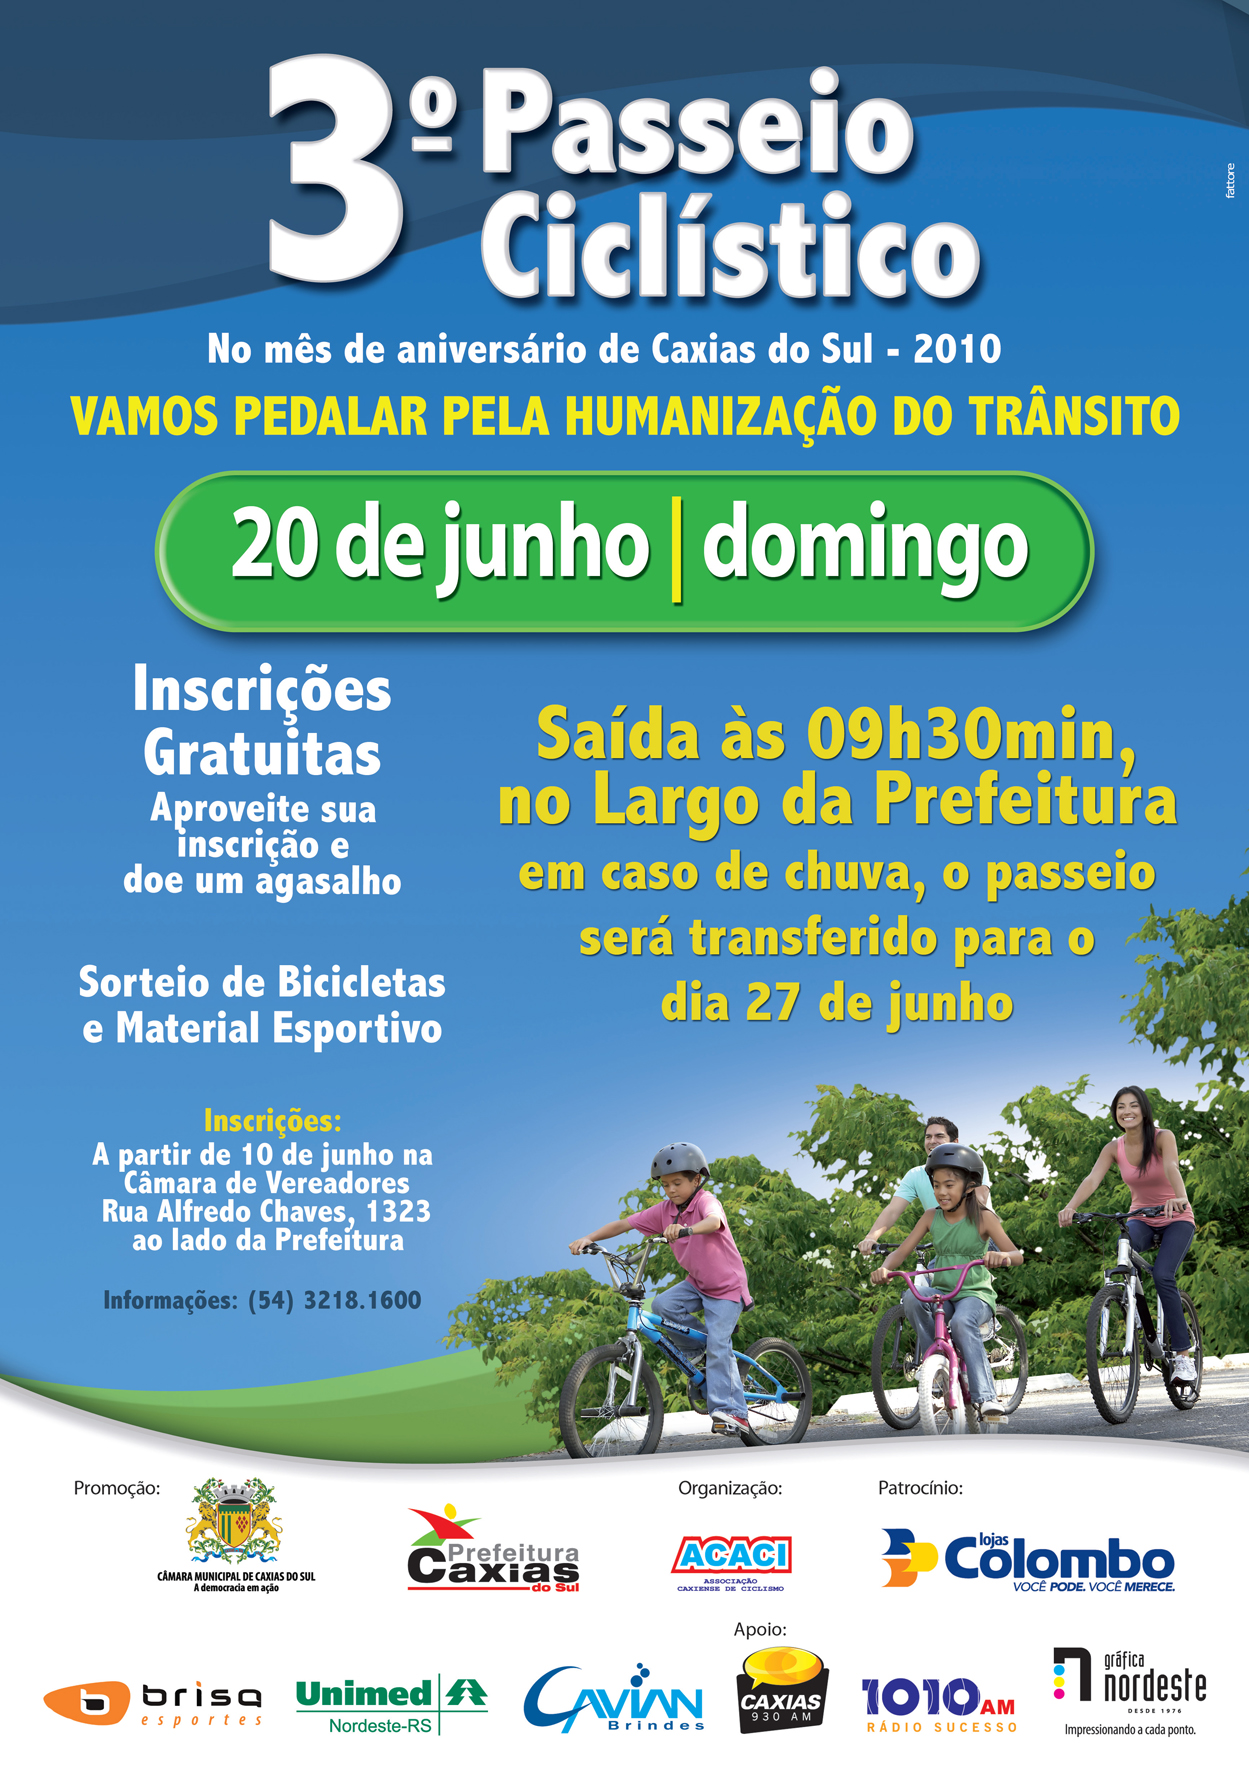 3º Passeio Ciclístico ocorre no próximo domingo